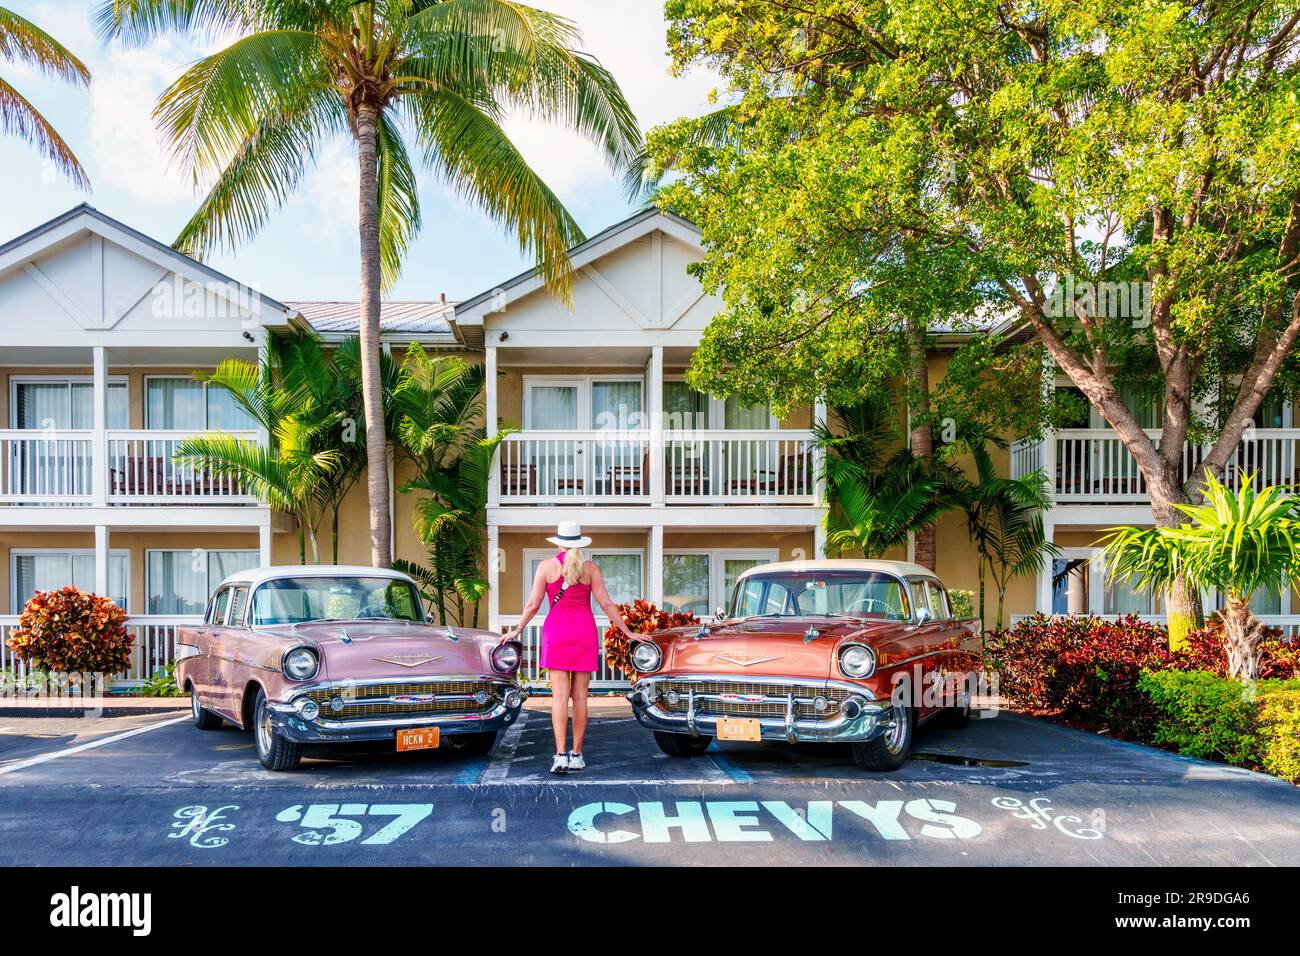 Hotel Havana Cabana, Oldtimer de Cuba decorado frente al Hotel Key West, Florida, Estados Unidos Foto de stock